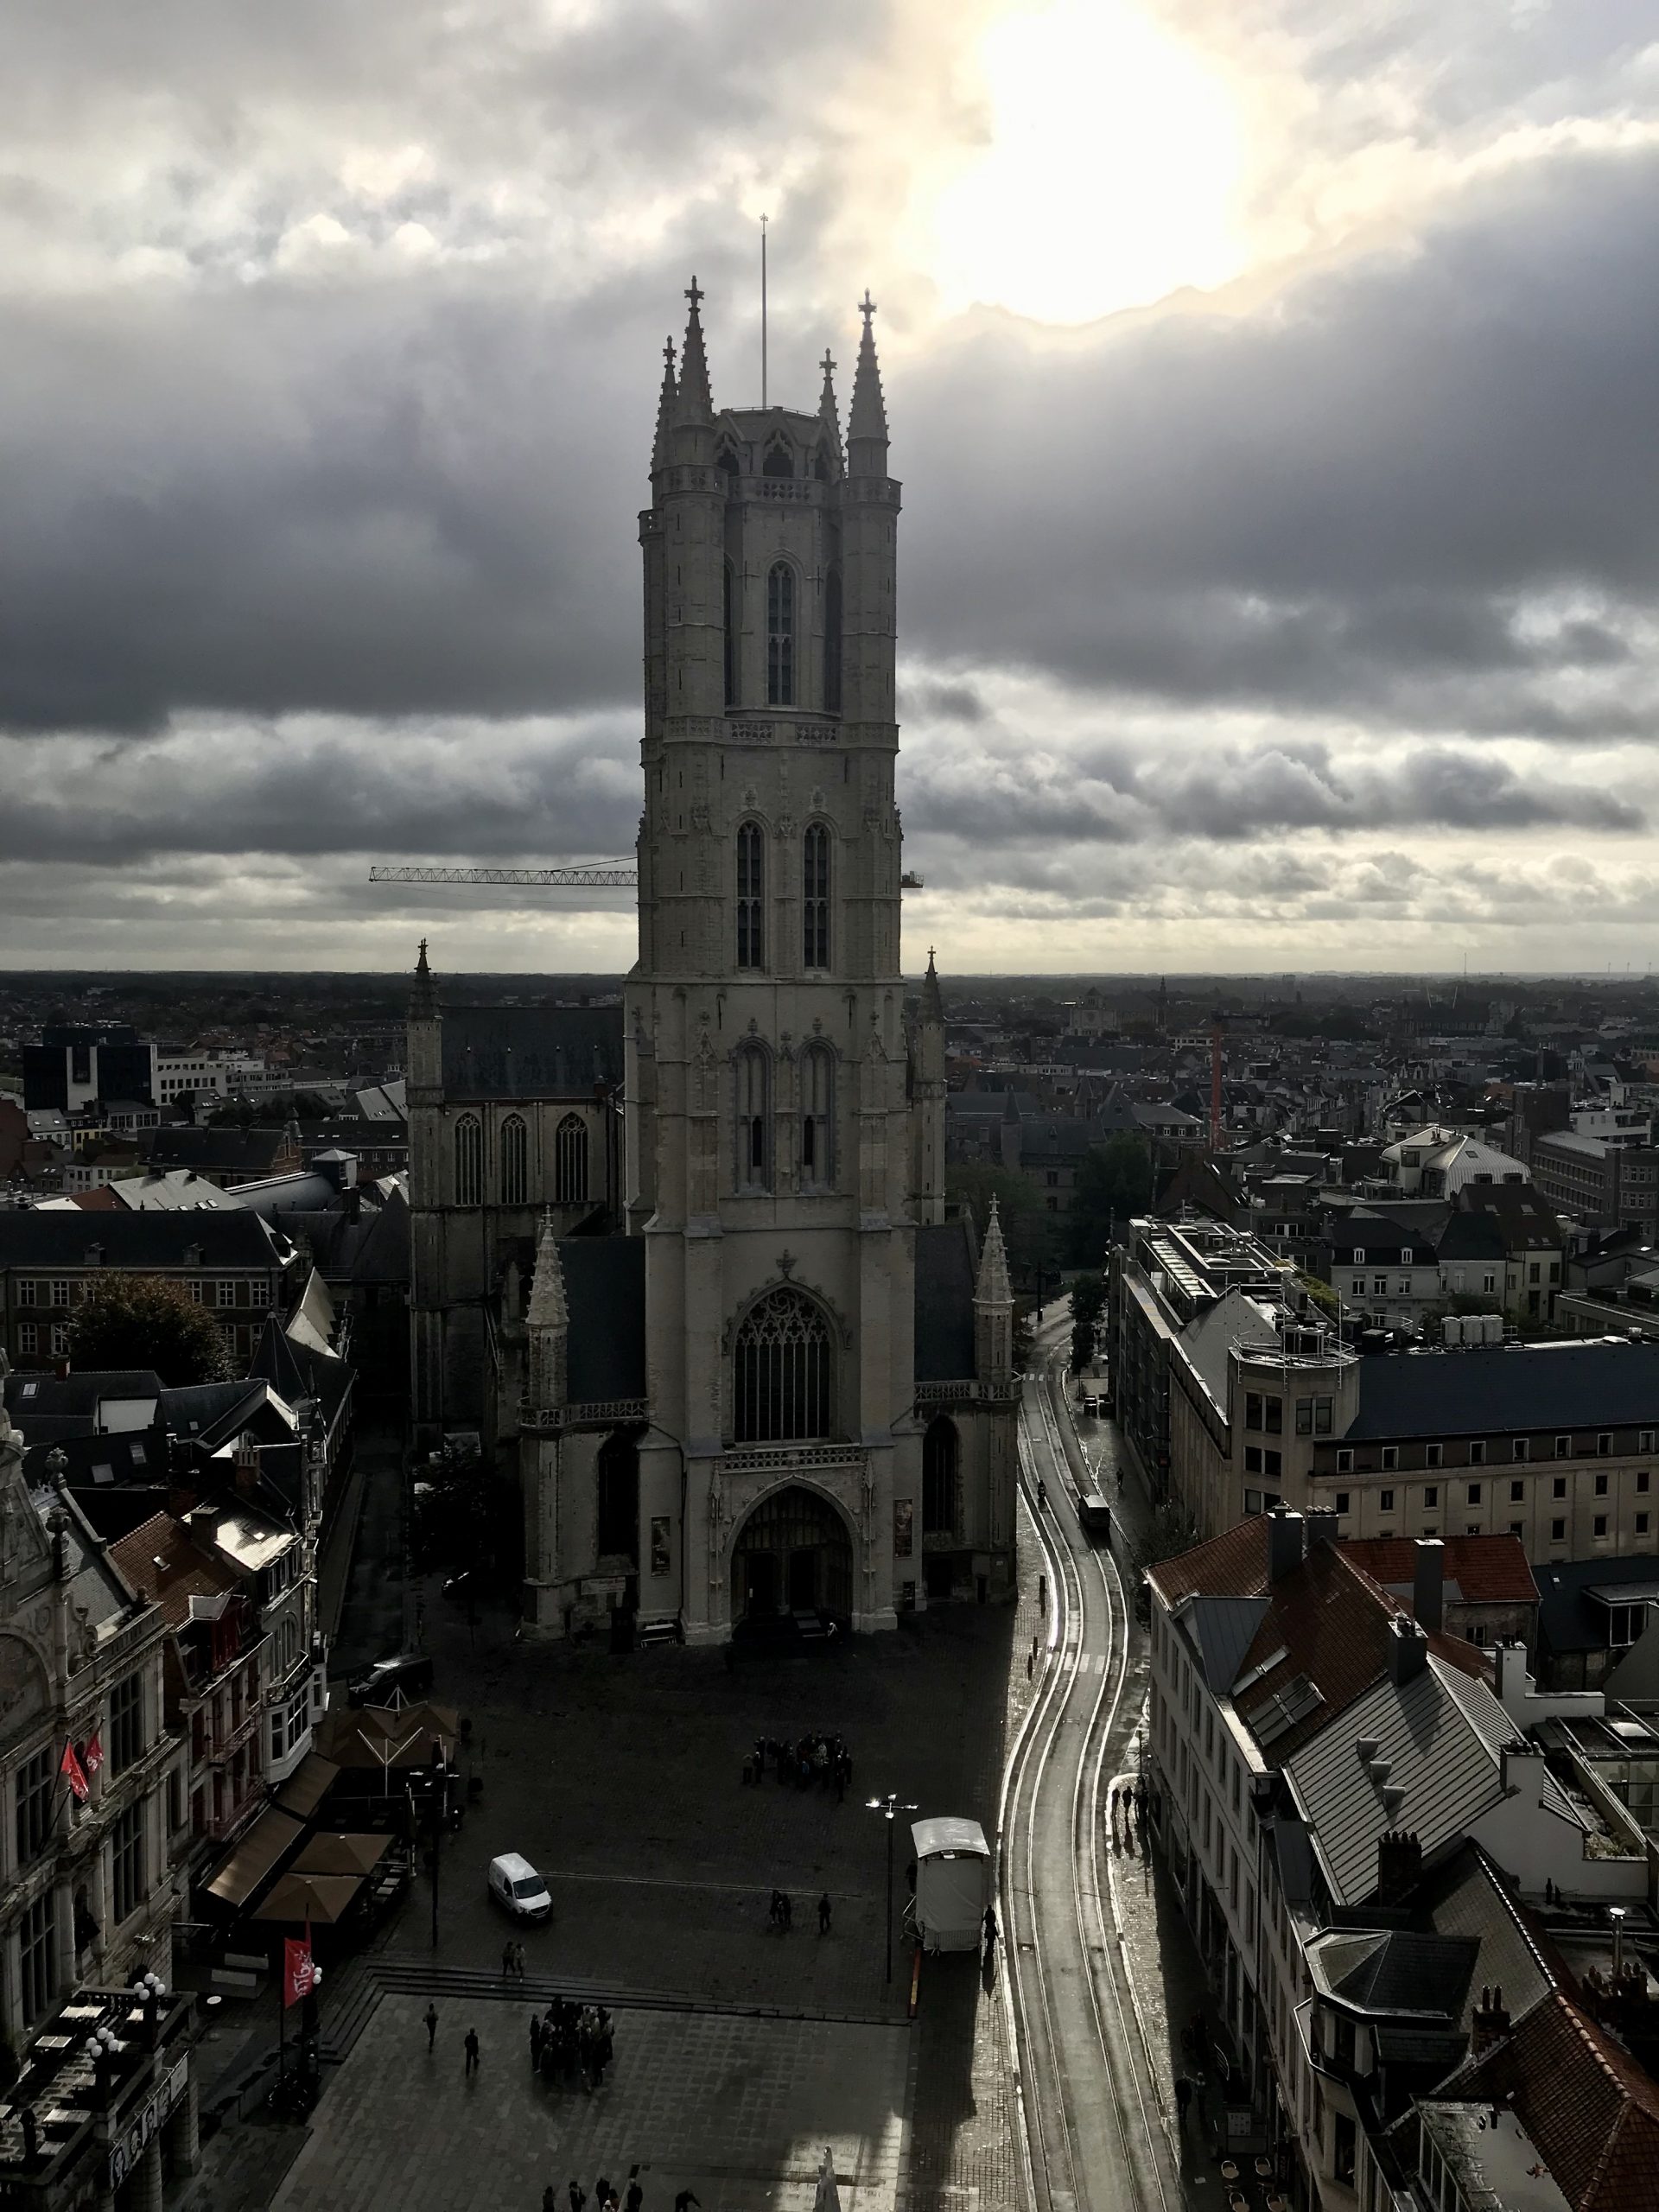 Sint Baafskathedraal (Saint Bavo-katedralen) i Gent